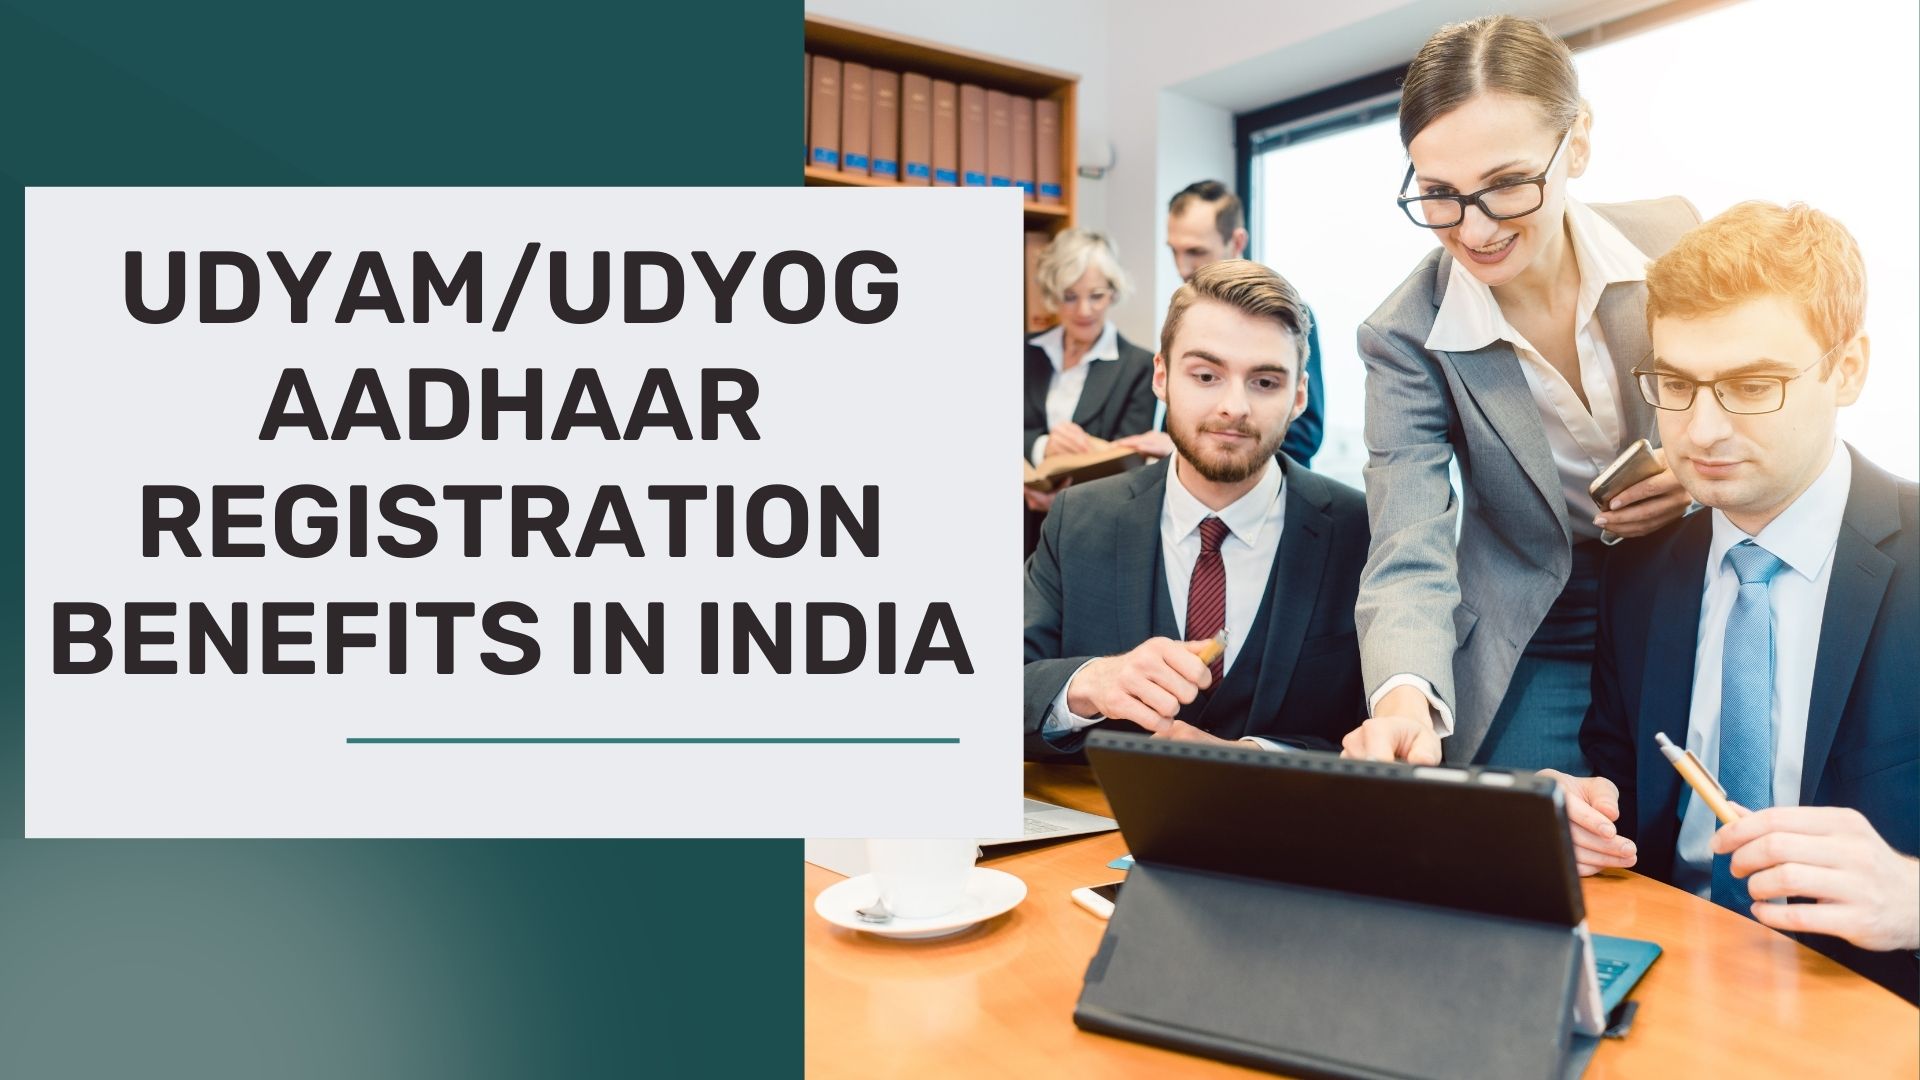 UDYAM/UDYOG AADHAAR REGISTRATION BENEFITS IN INDIA